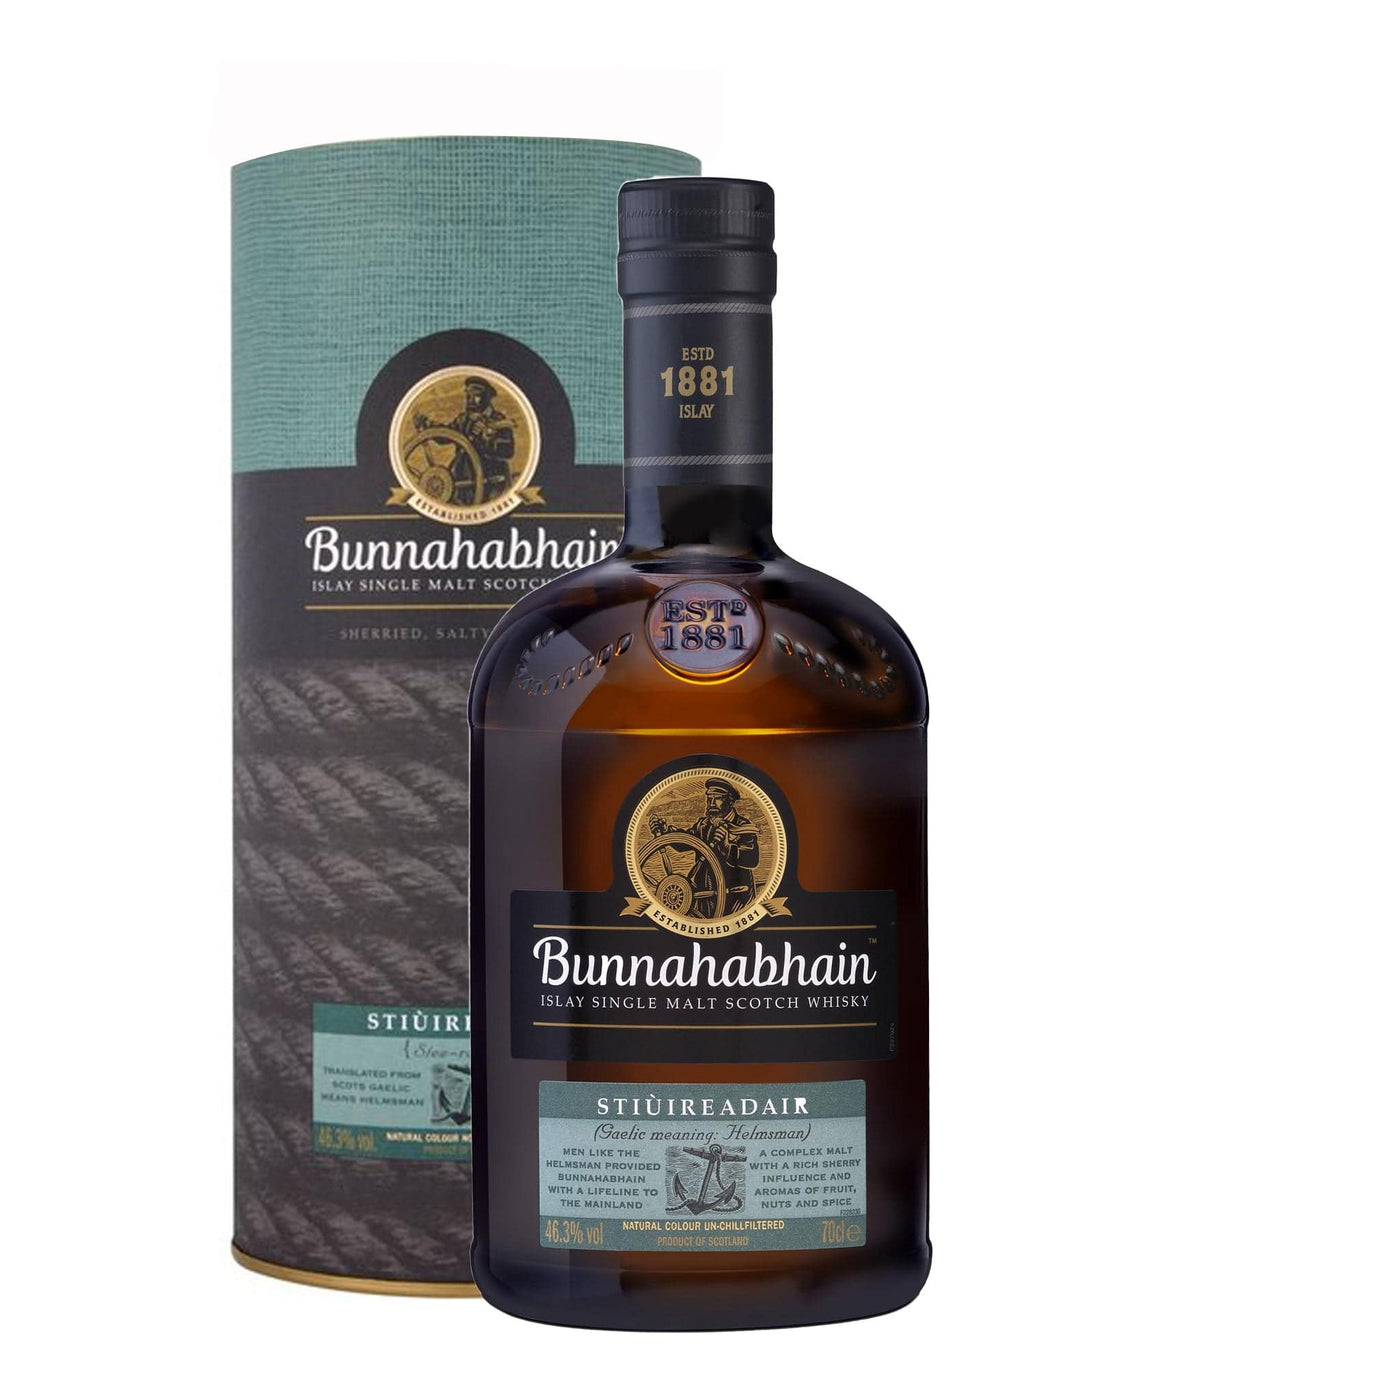 Bunnahabhain Stiuireadair Whisky - Spiritly